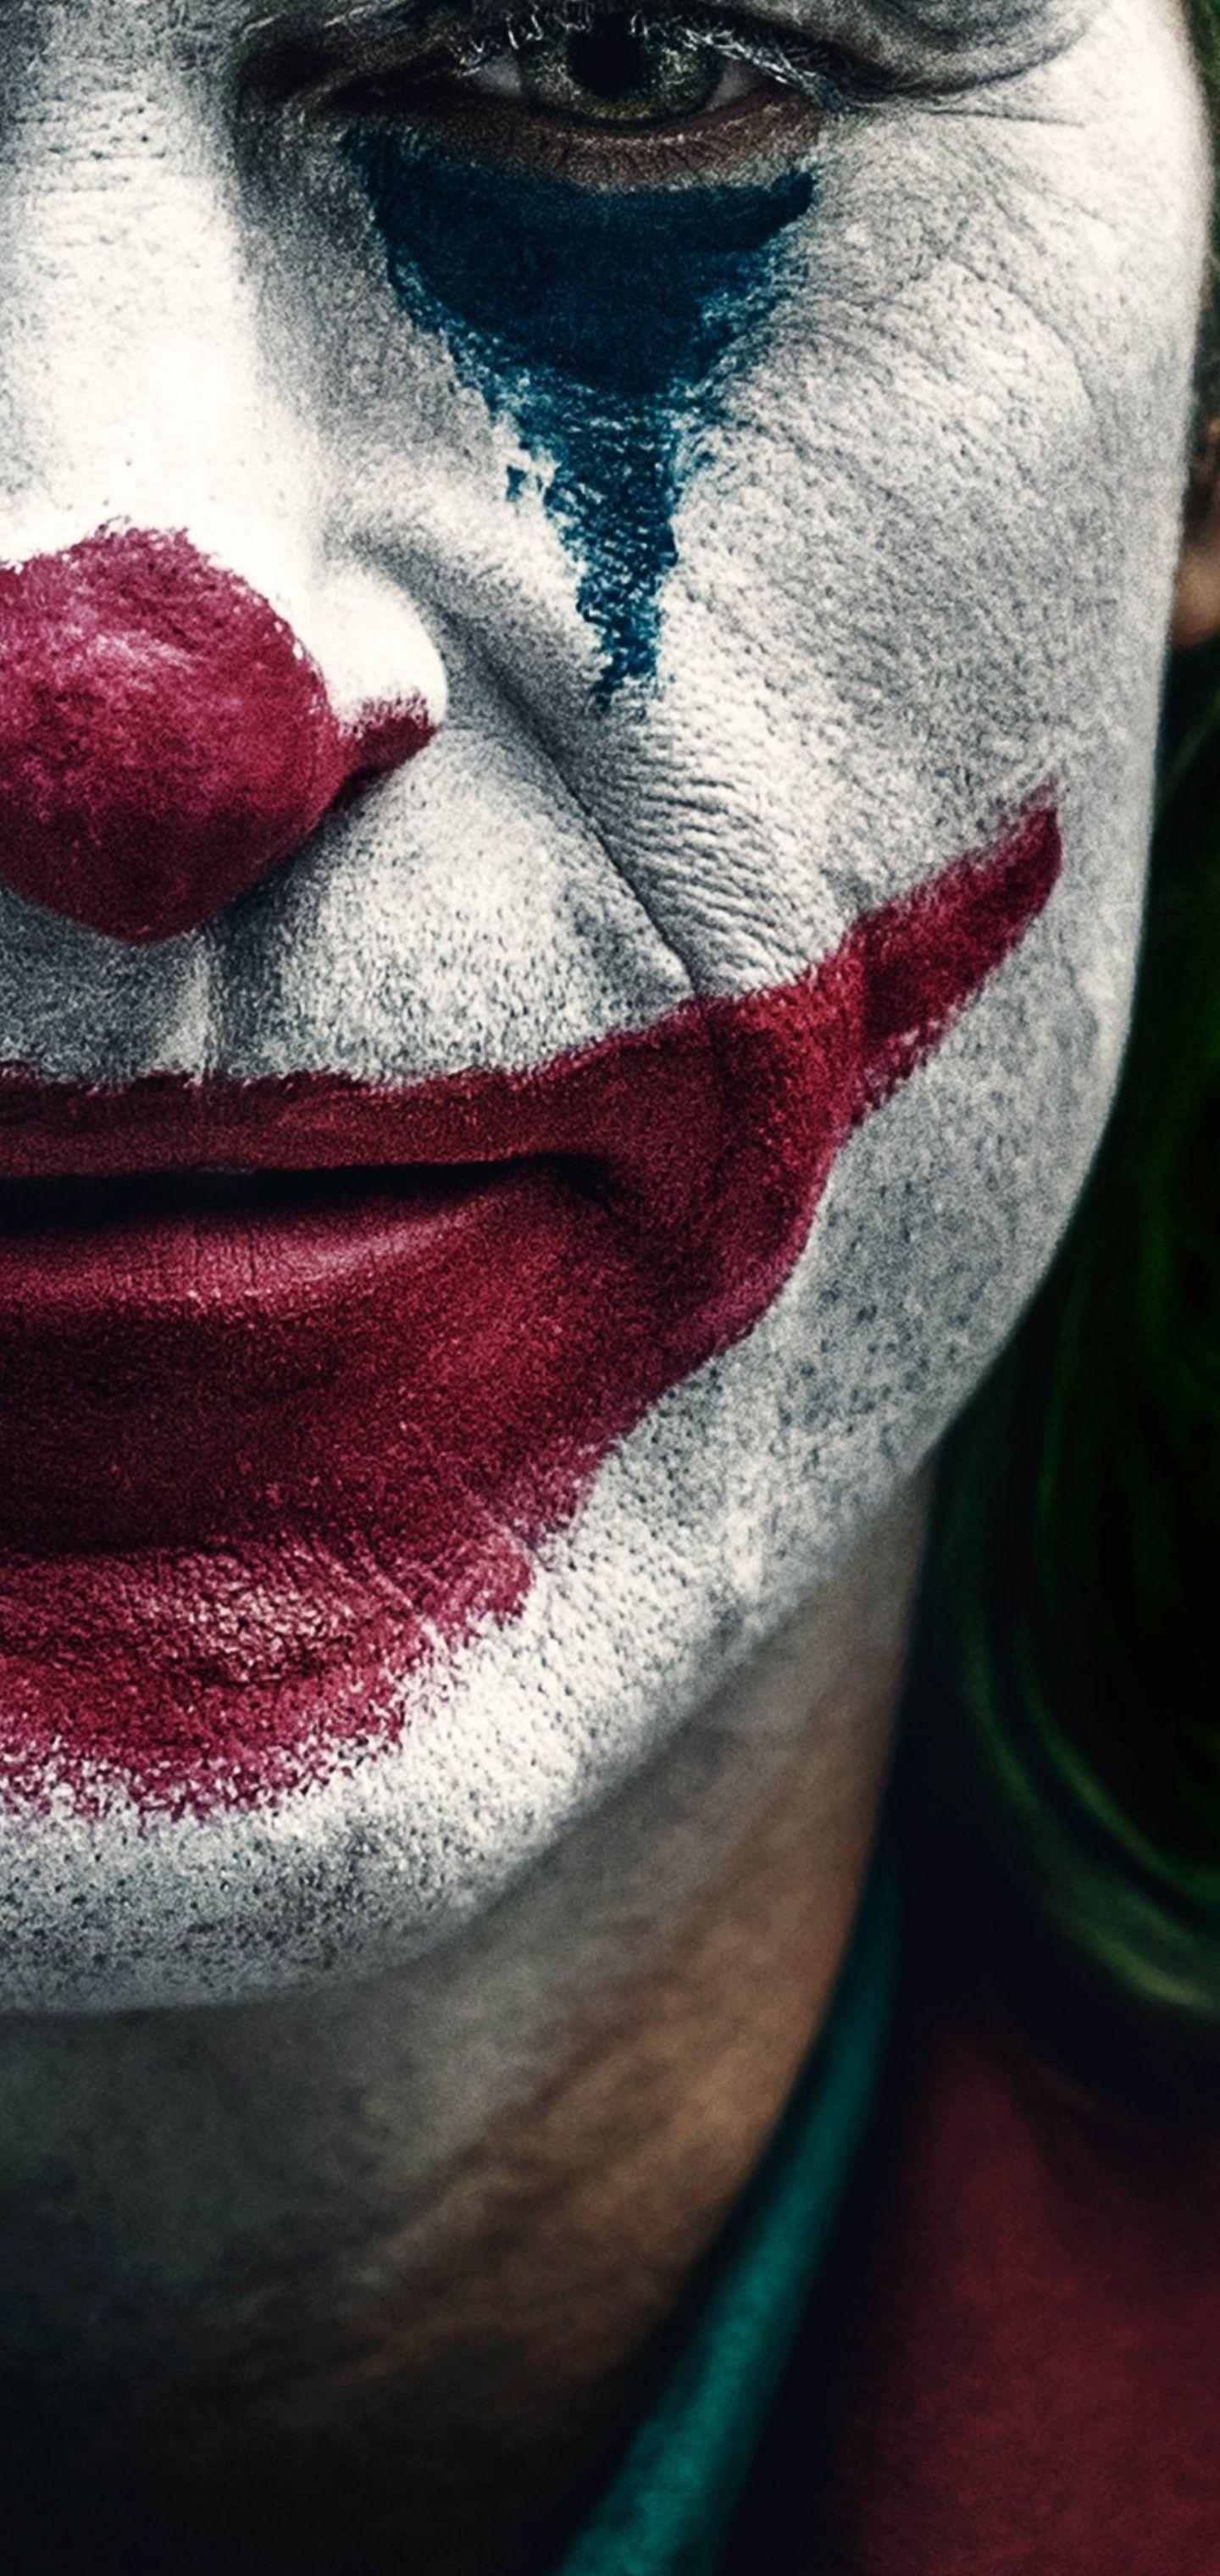 Joker Poster Wallpapers Top Free Joker Poster Backgrounds Wallpaperaccess